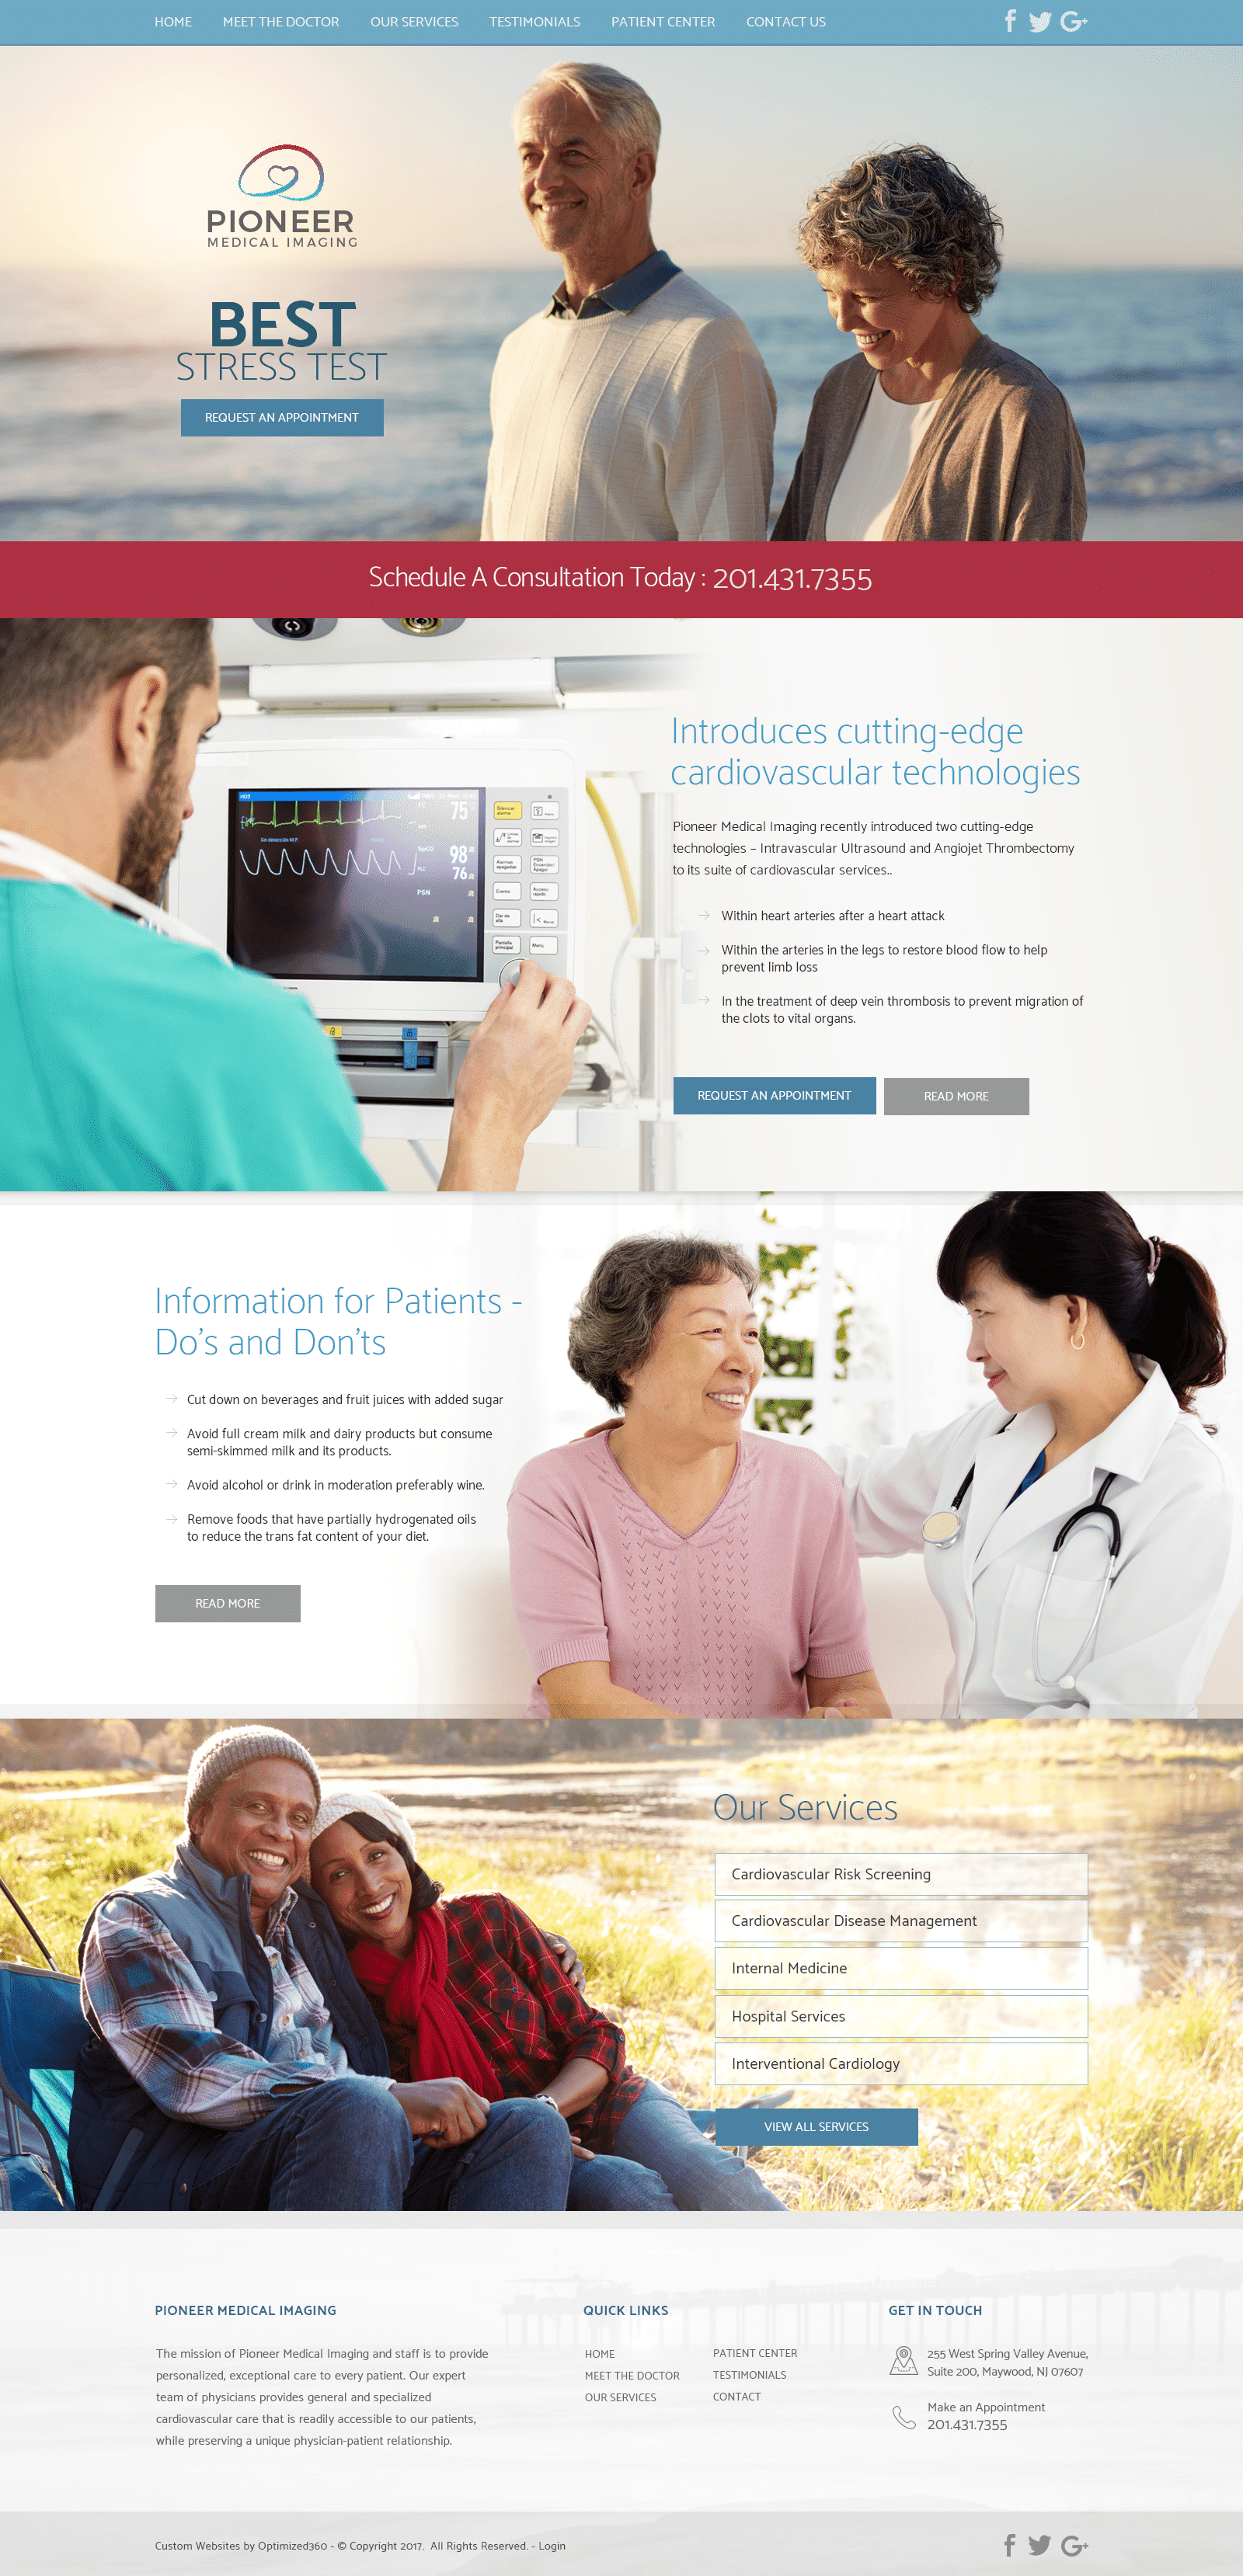 Pioneer Medical Imaging Website